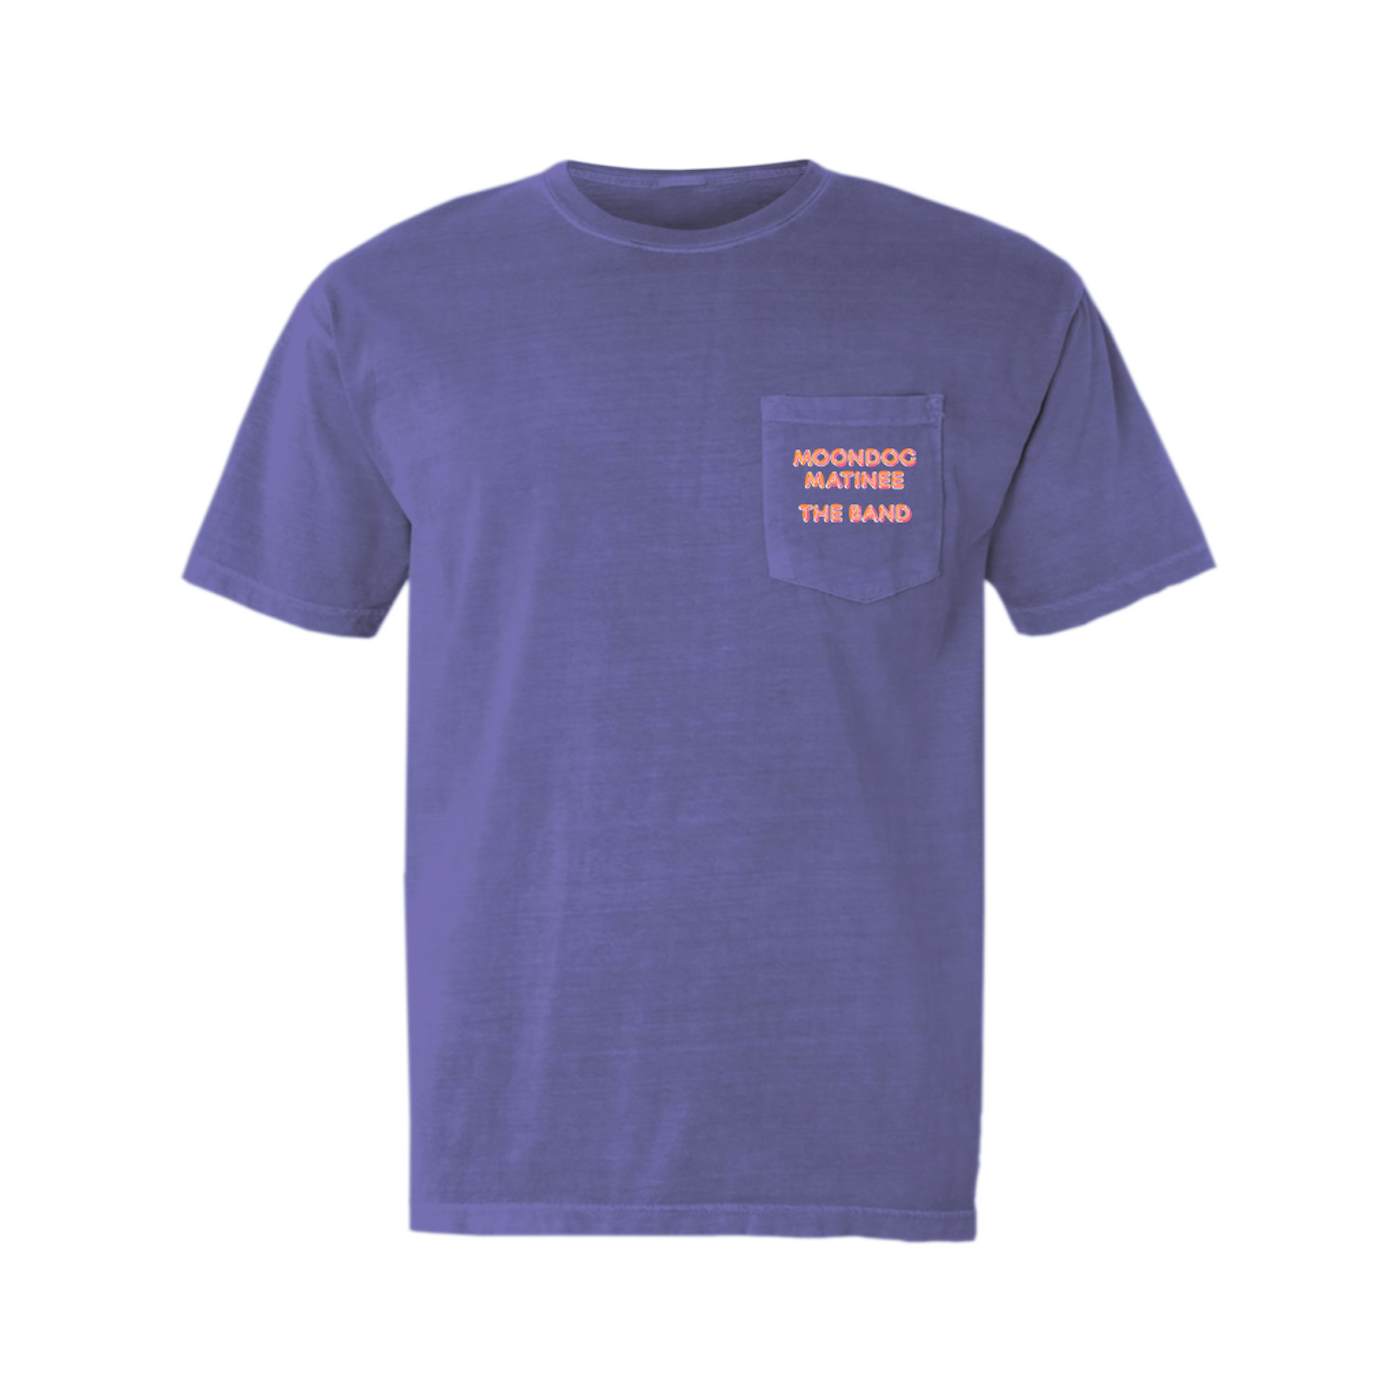 The Band T-Shirt | Moondog Matinee The Band Pocket T-shirt